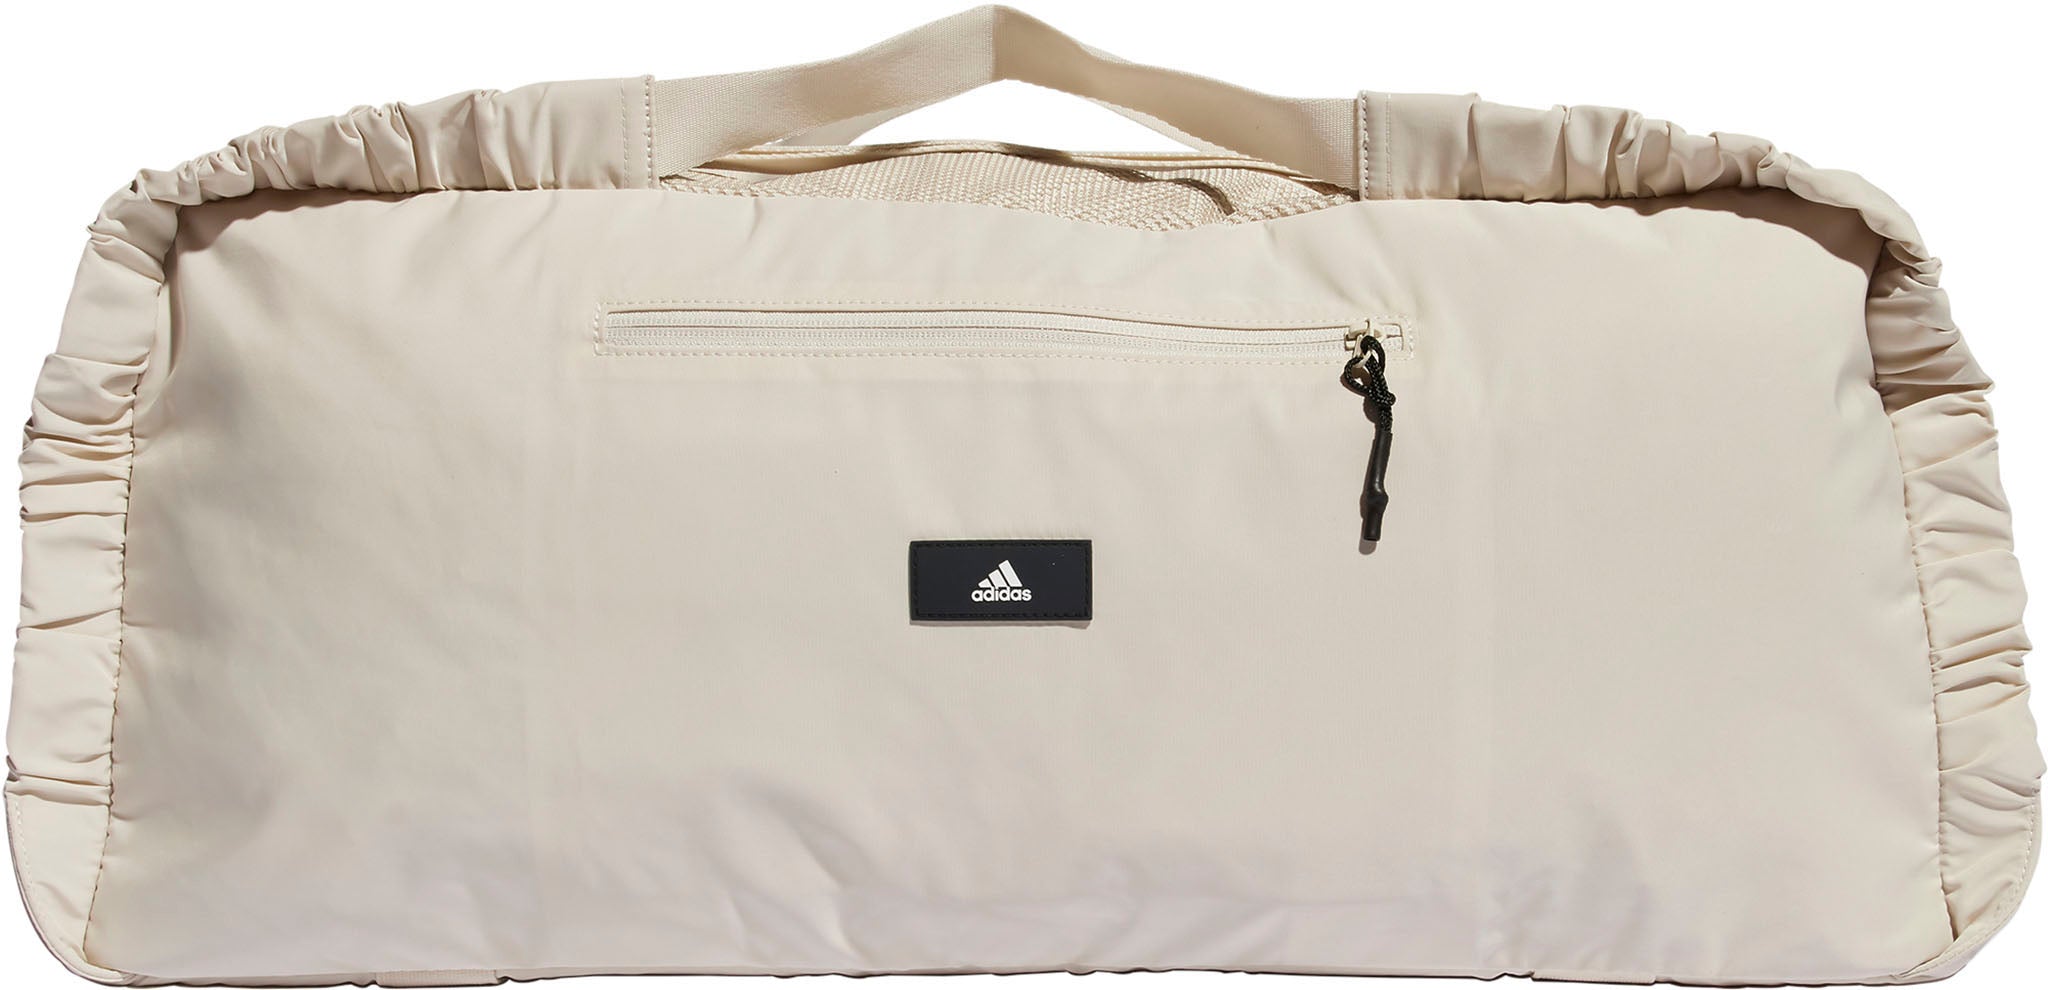 adidas Yoga Duffel Bag - Beige | adidas Canada